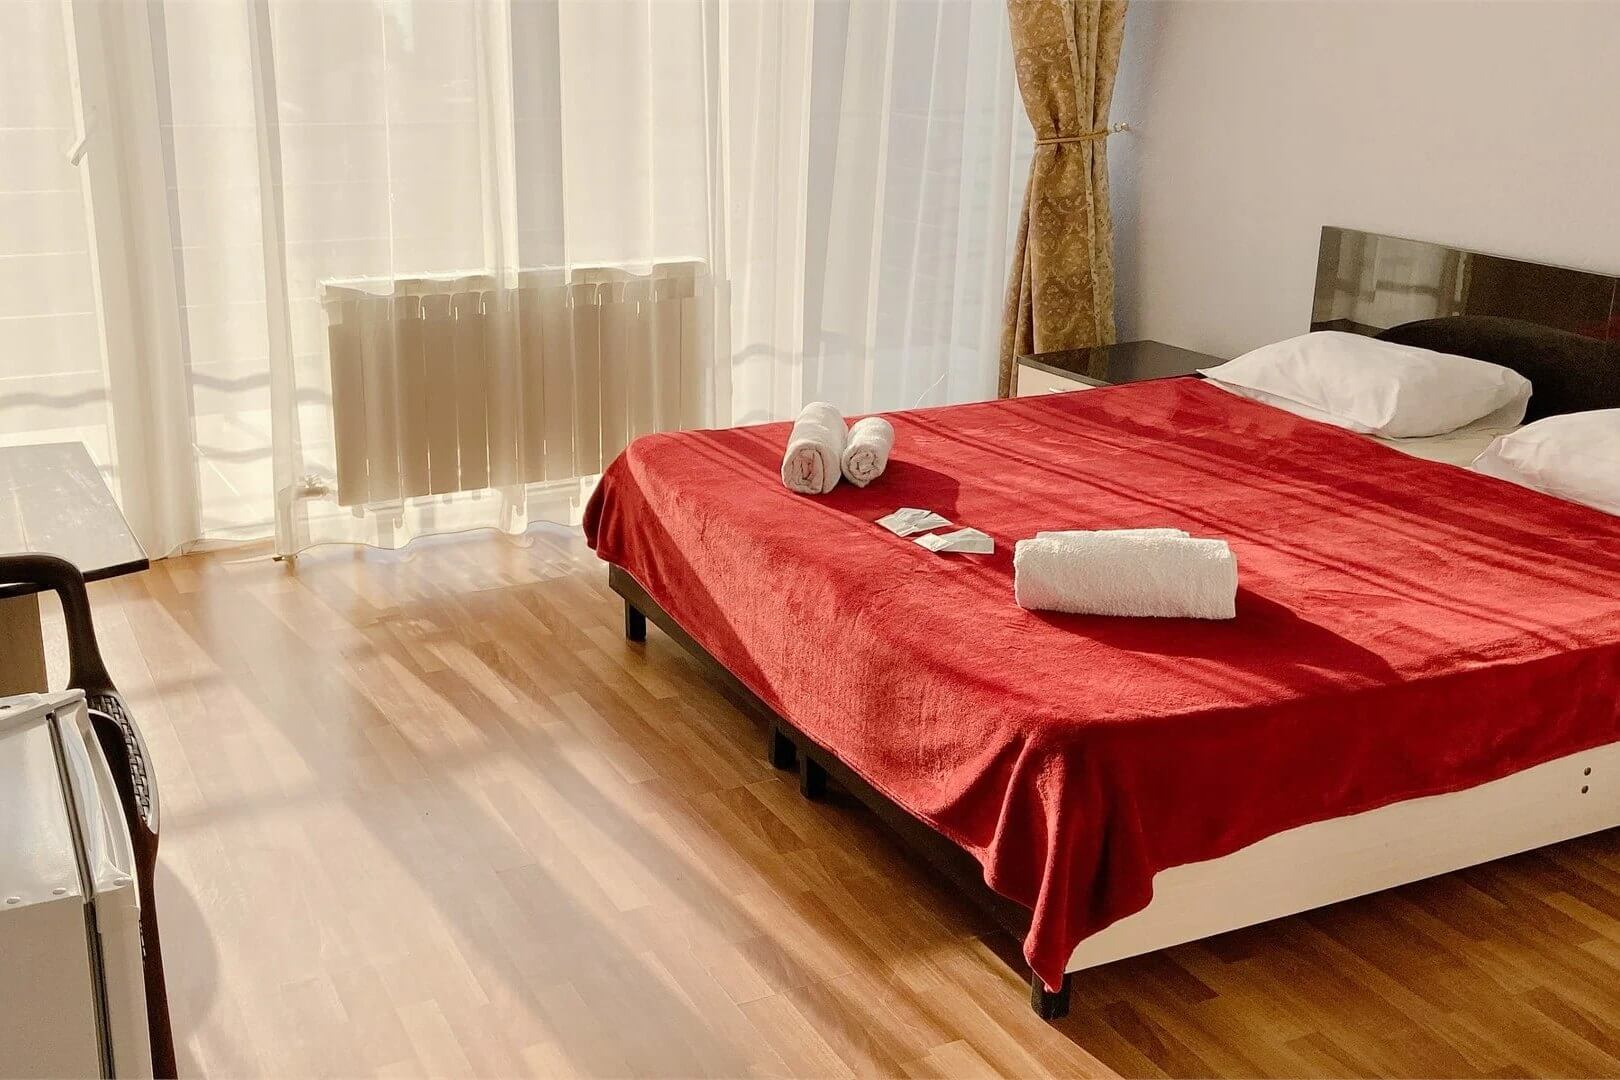 Кровать в номере накрыта красным покрывалом.